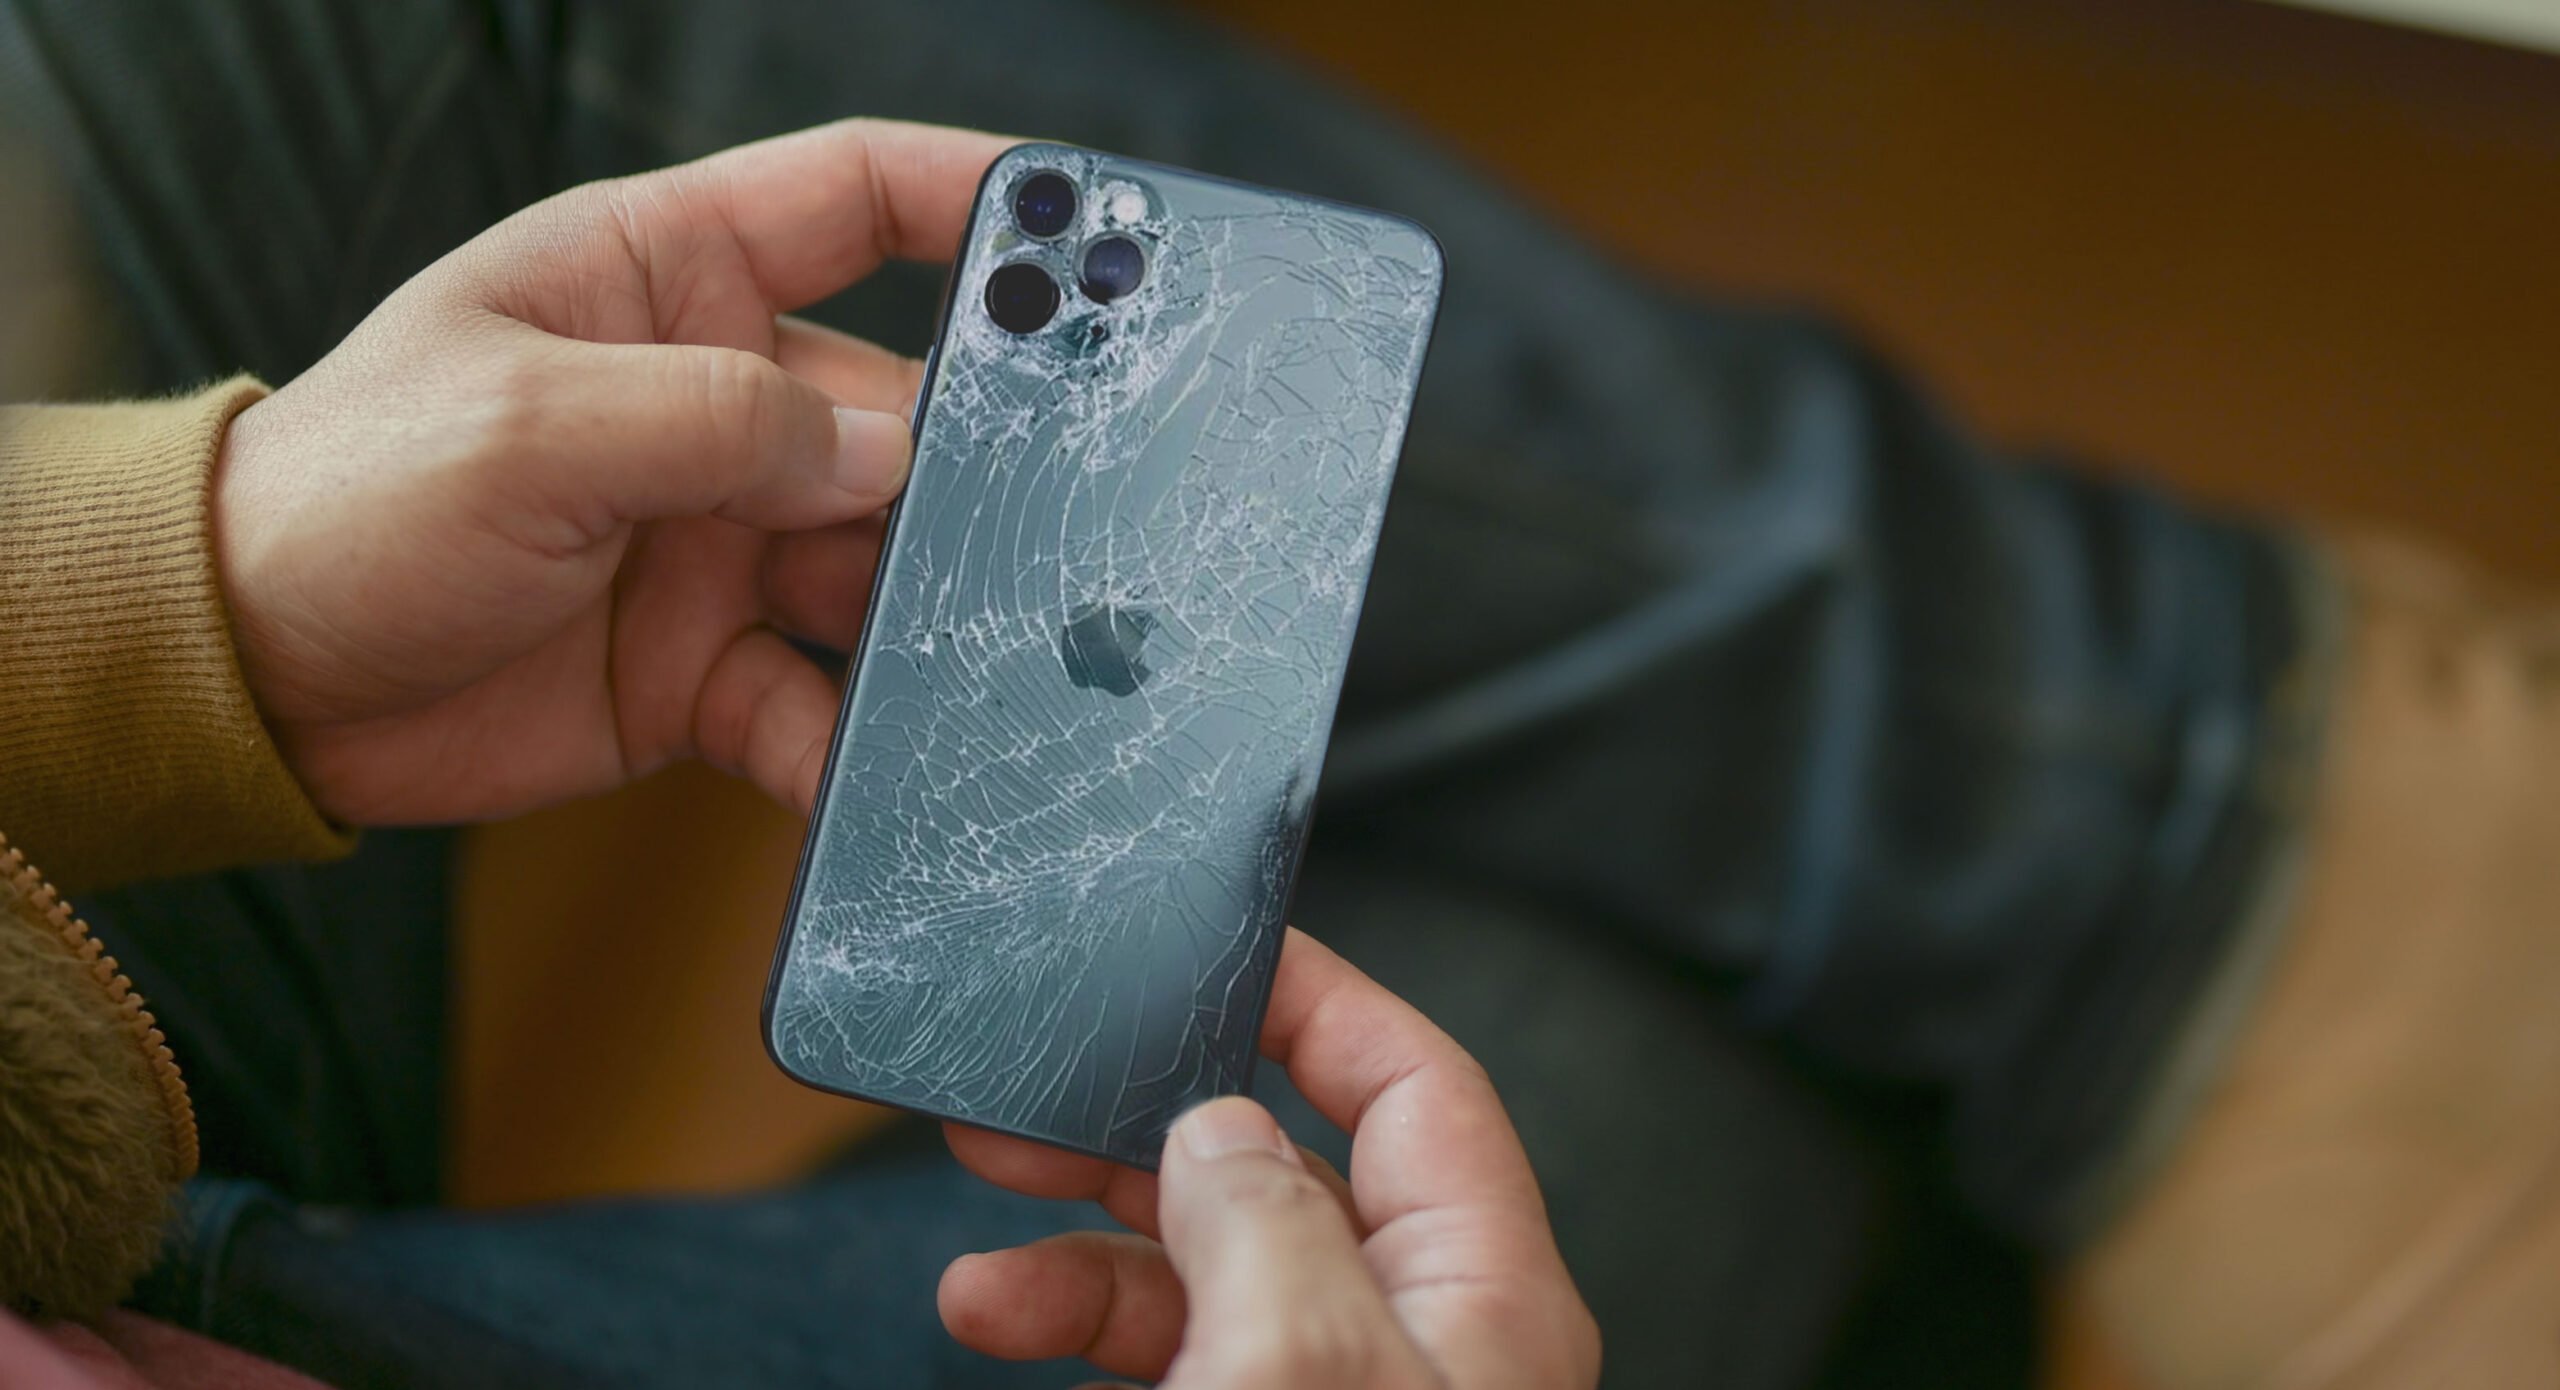 Réparer l'écran de son iPhone 12 Pro Max coûtera 361€ (251€ pour l